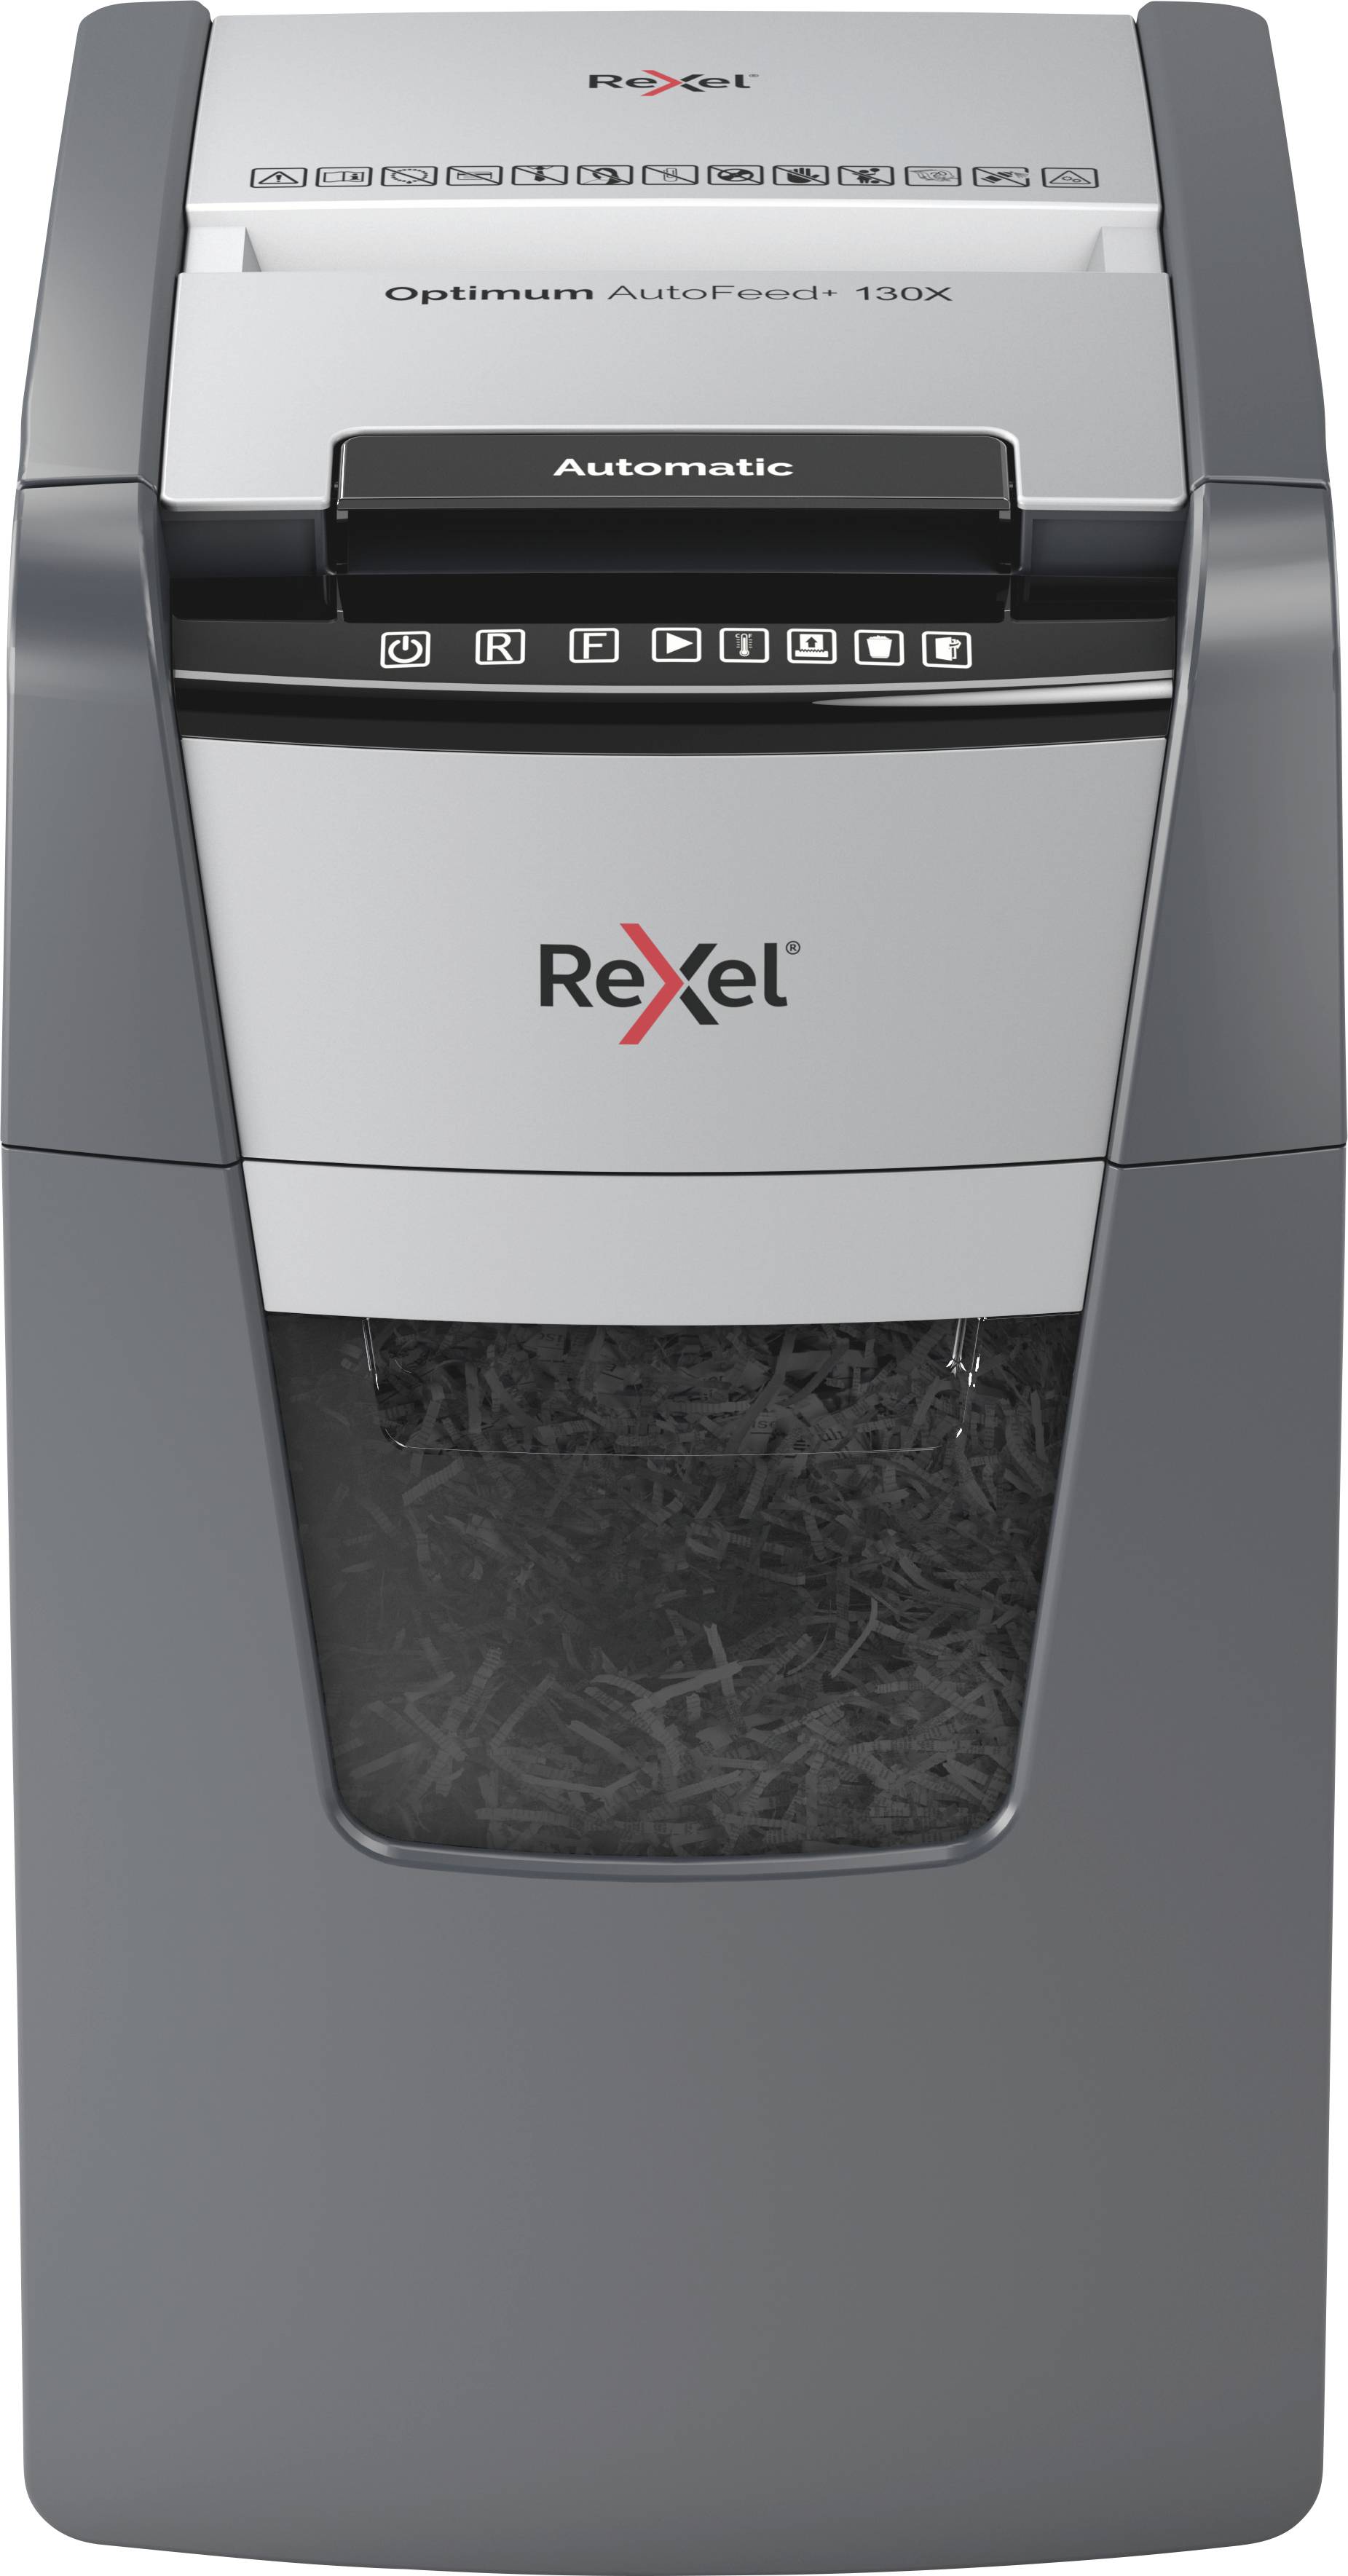 REXEL Optimum AutoFeed+ 130X Aktenvernichter Partikelschnitt 4 x 28 mm 44 l Blattanzahl (max.):